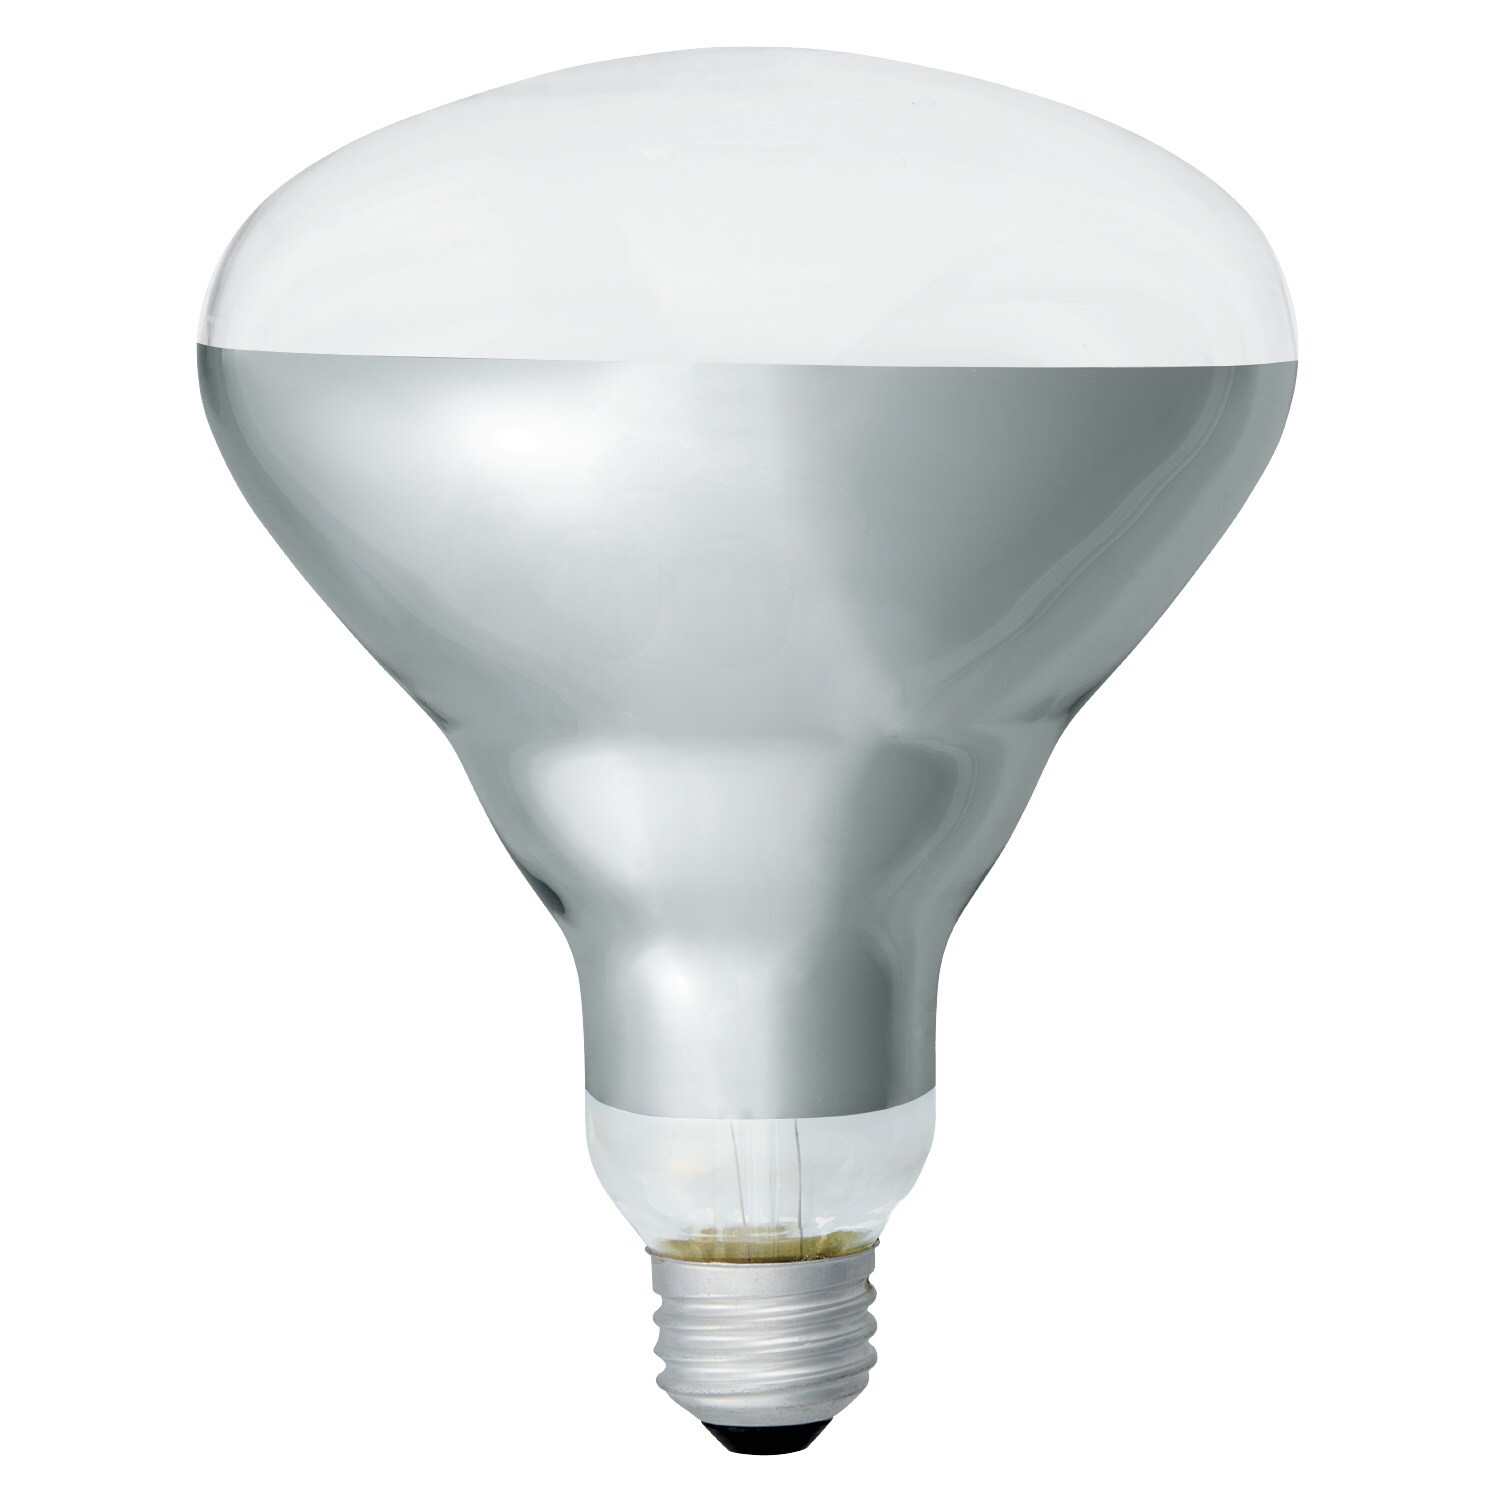 12 250 Watt 120 VOLT Halogen Work Light Replacement Lamp Bulb  New!! 